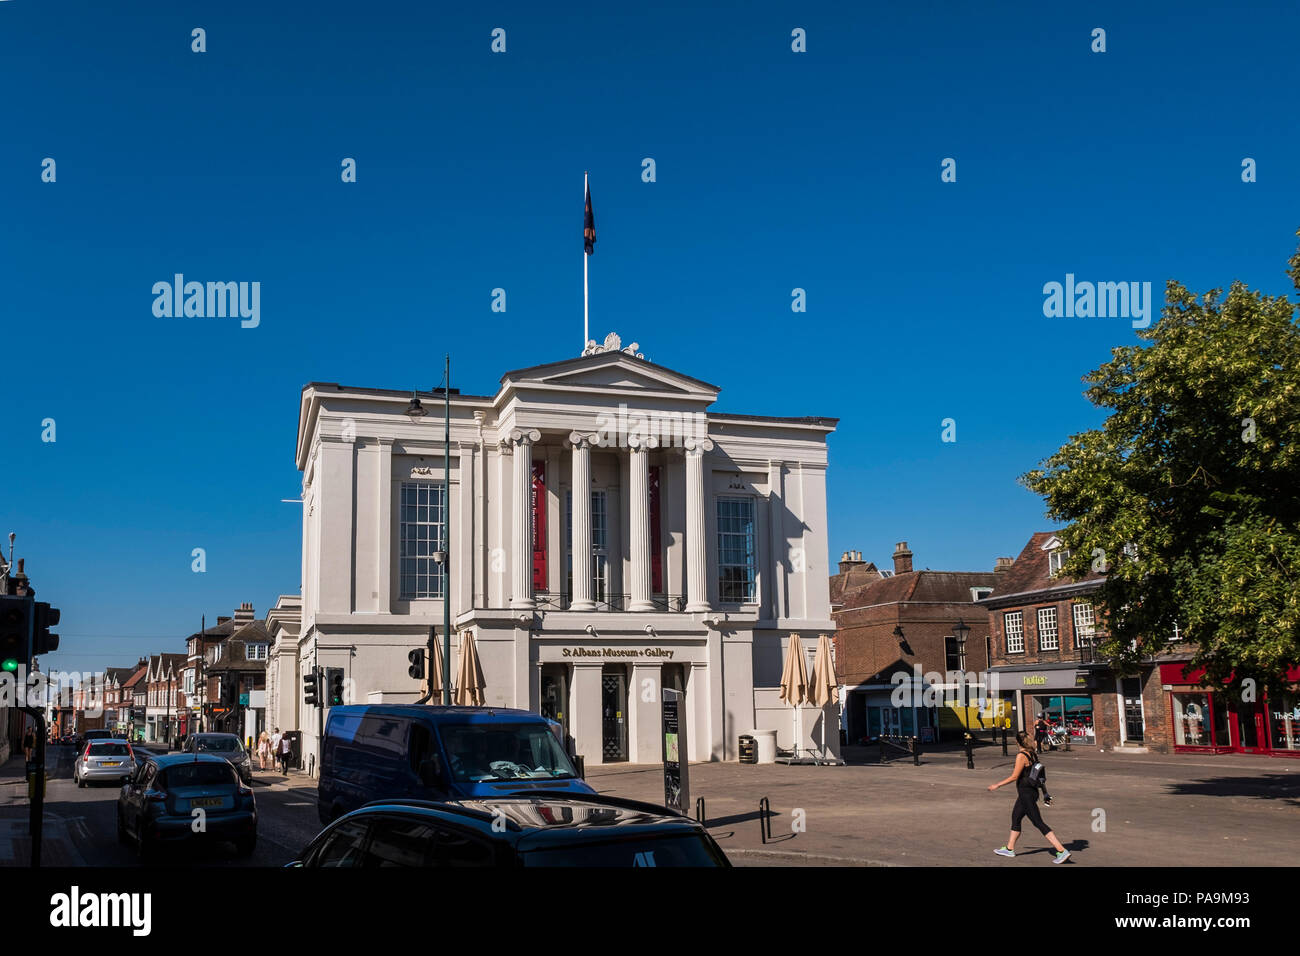 St Albans  + Musée des beaux-arts installé dans l'ancien hôtel de ville, St.Peter's street, St Albans, Hertfordshire, Angleterre, Royaume-Uni Banque D'Images